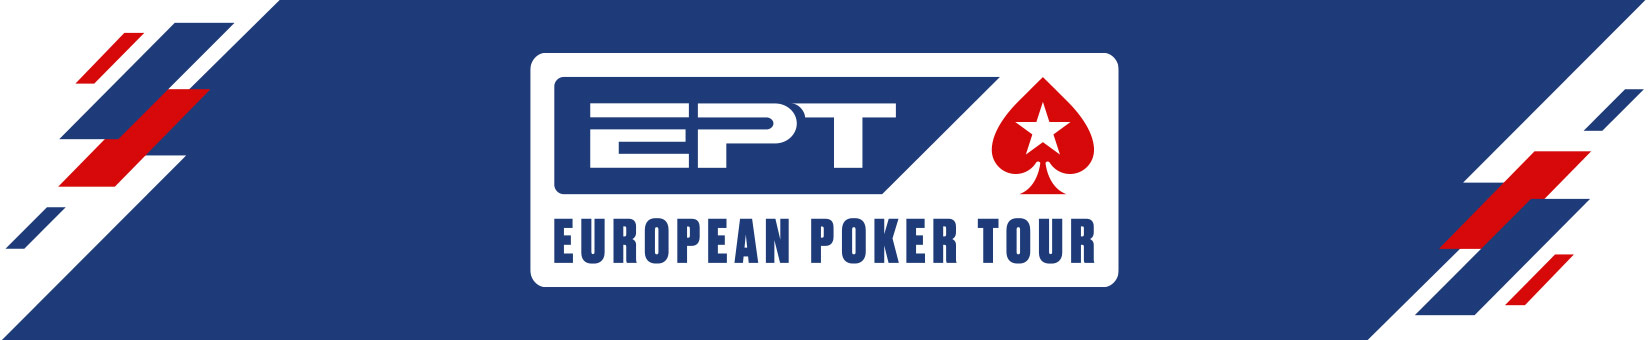 European Poker Tour 2021